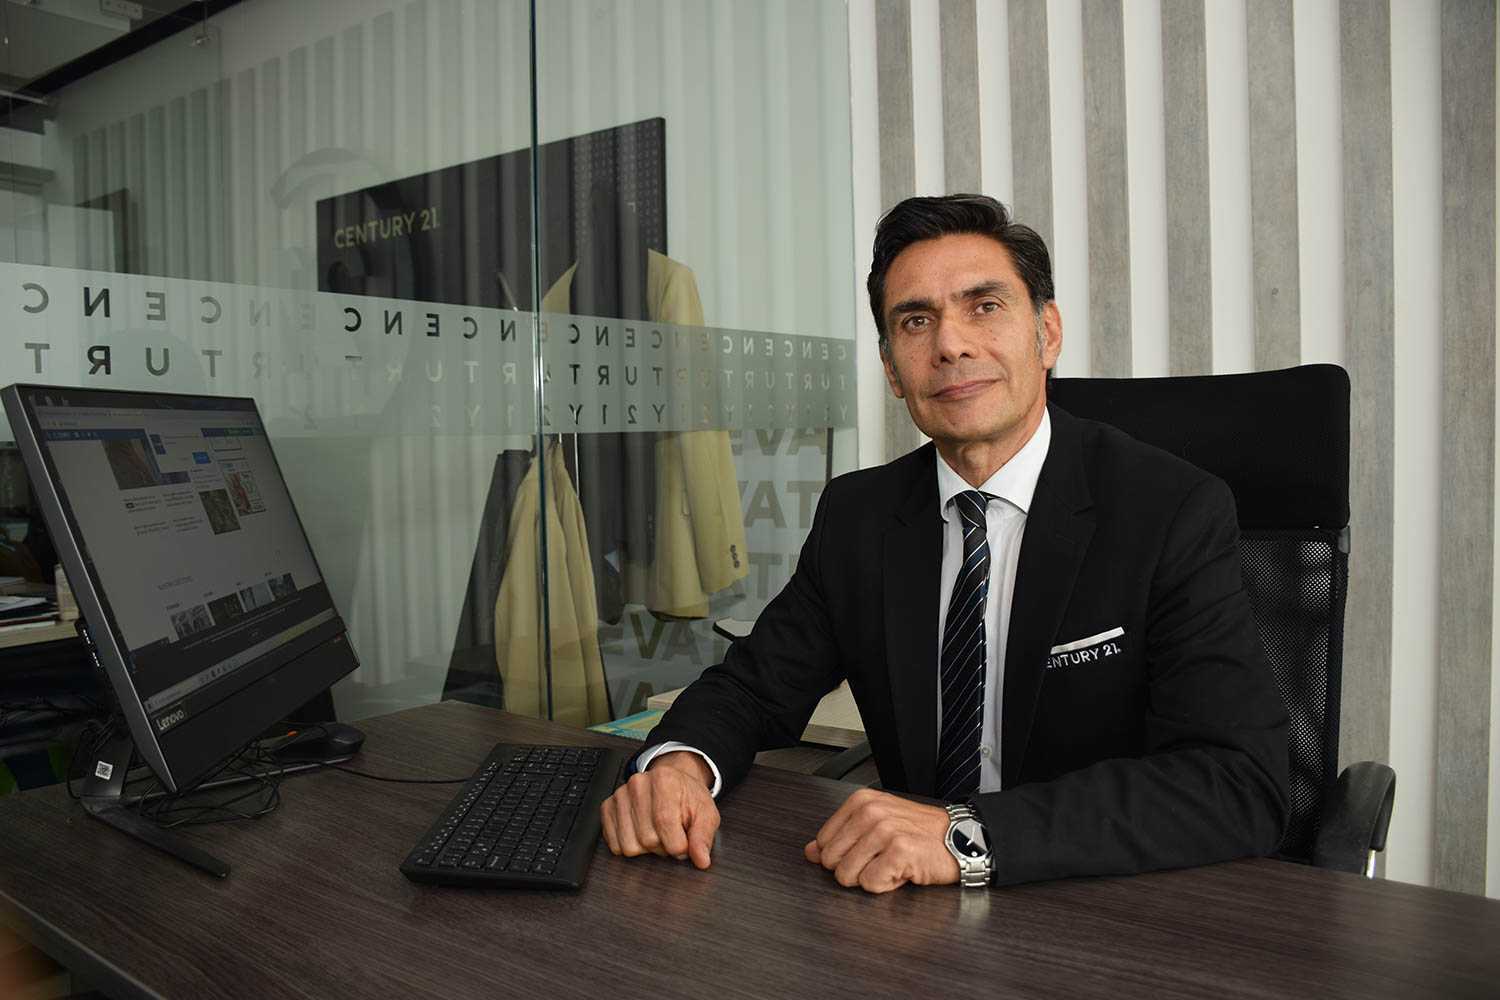 Albero Rodríguez CEO de C21